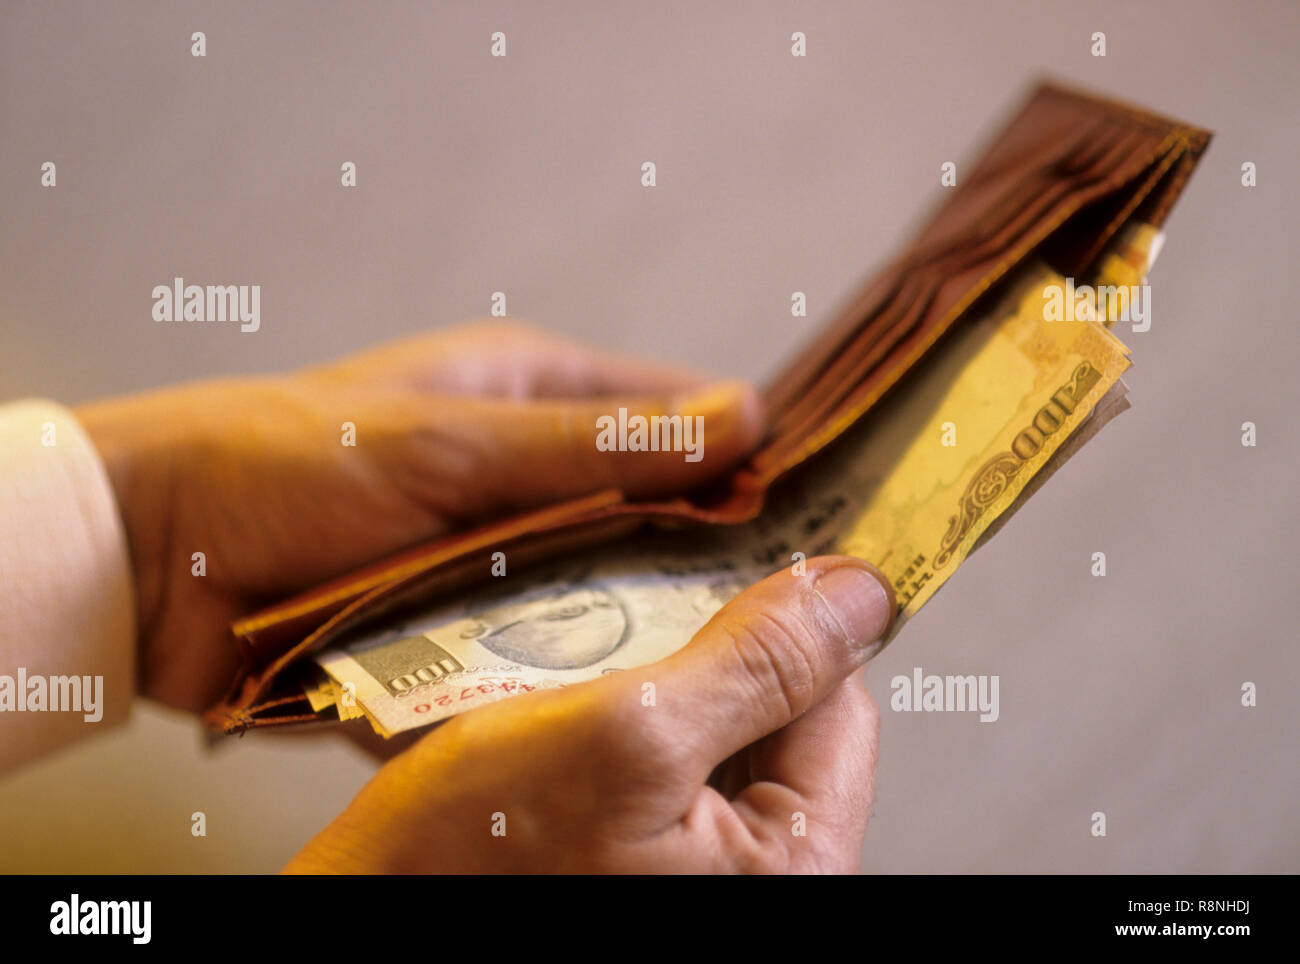 Devise de la richesse, l'homme prend de l'argent dans son portefeuille, de l'Inde Banque D'Images